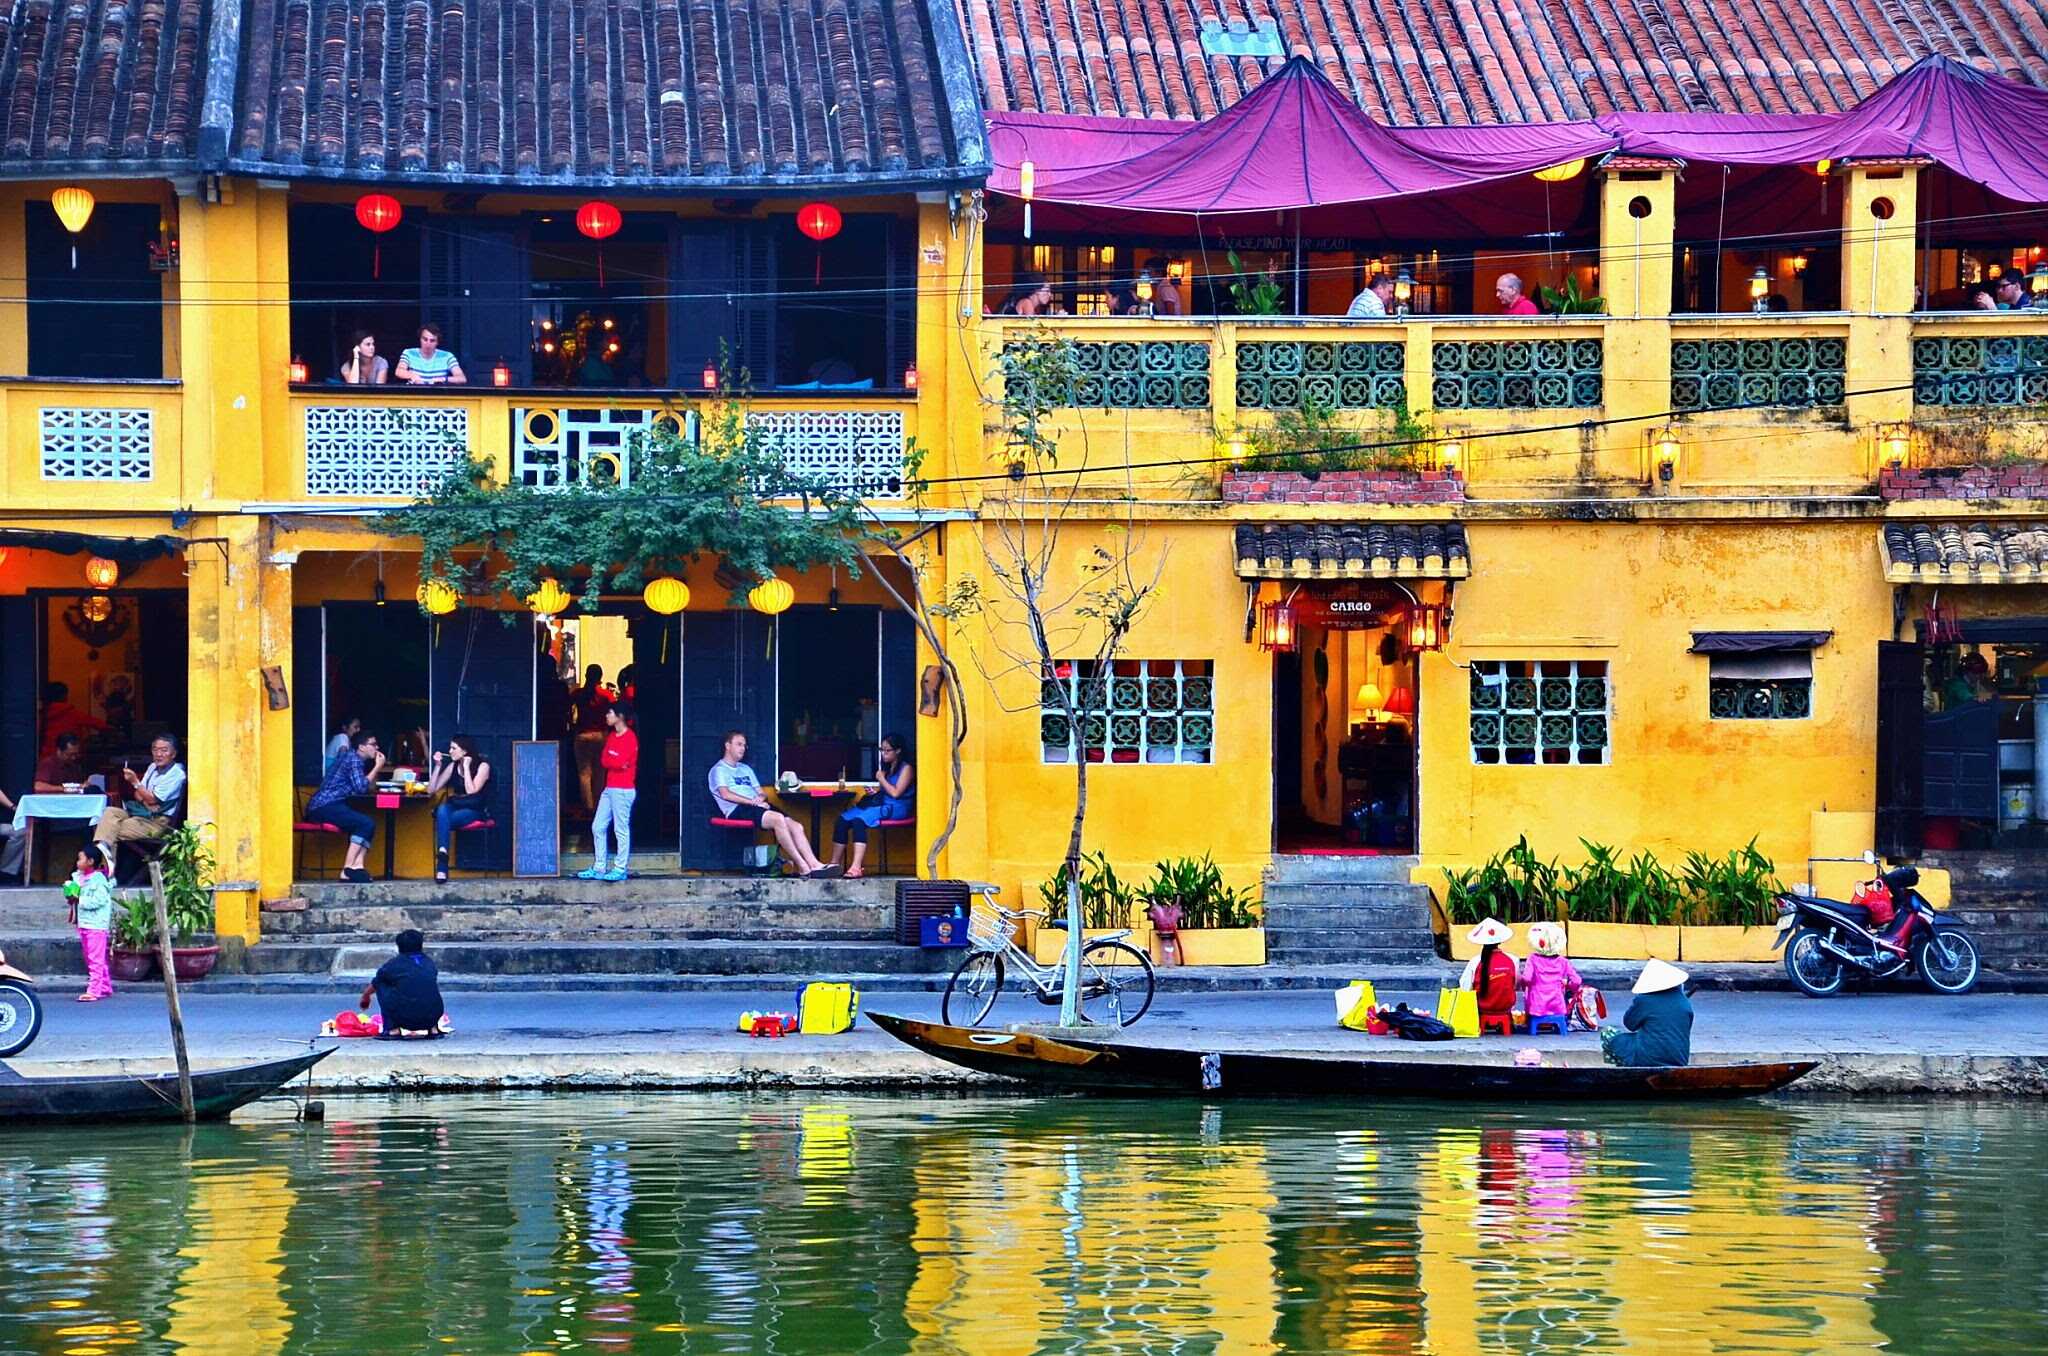 Du lịch Miền Trung - Bà Nà - Huế - Hồ Truồi bay từ Sài Gòn (T11)